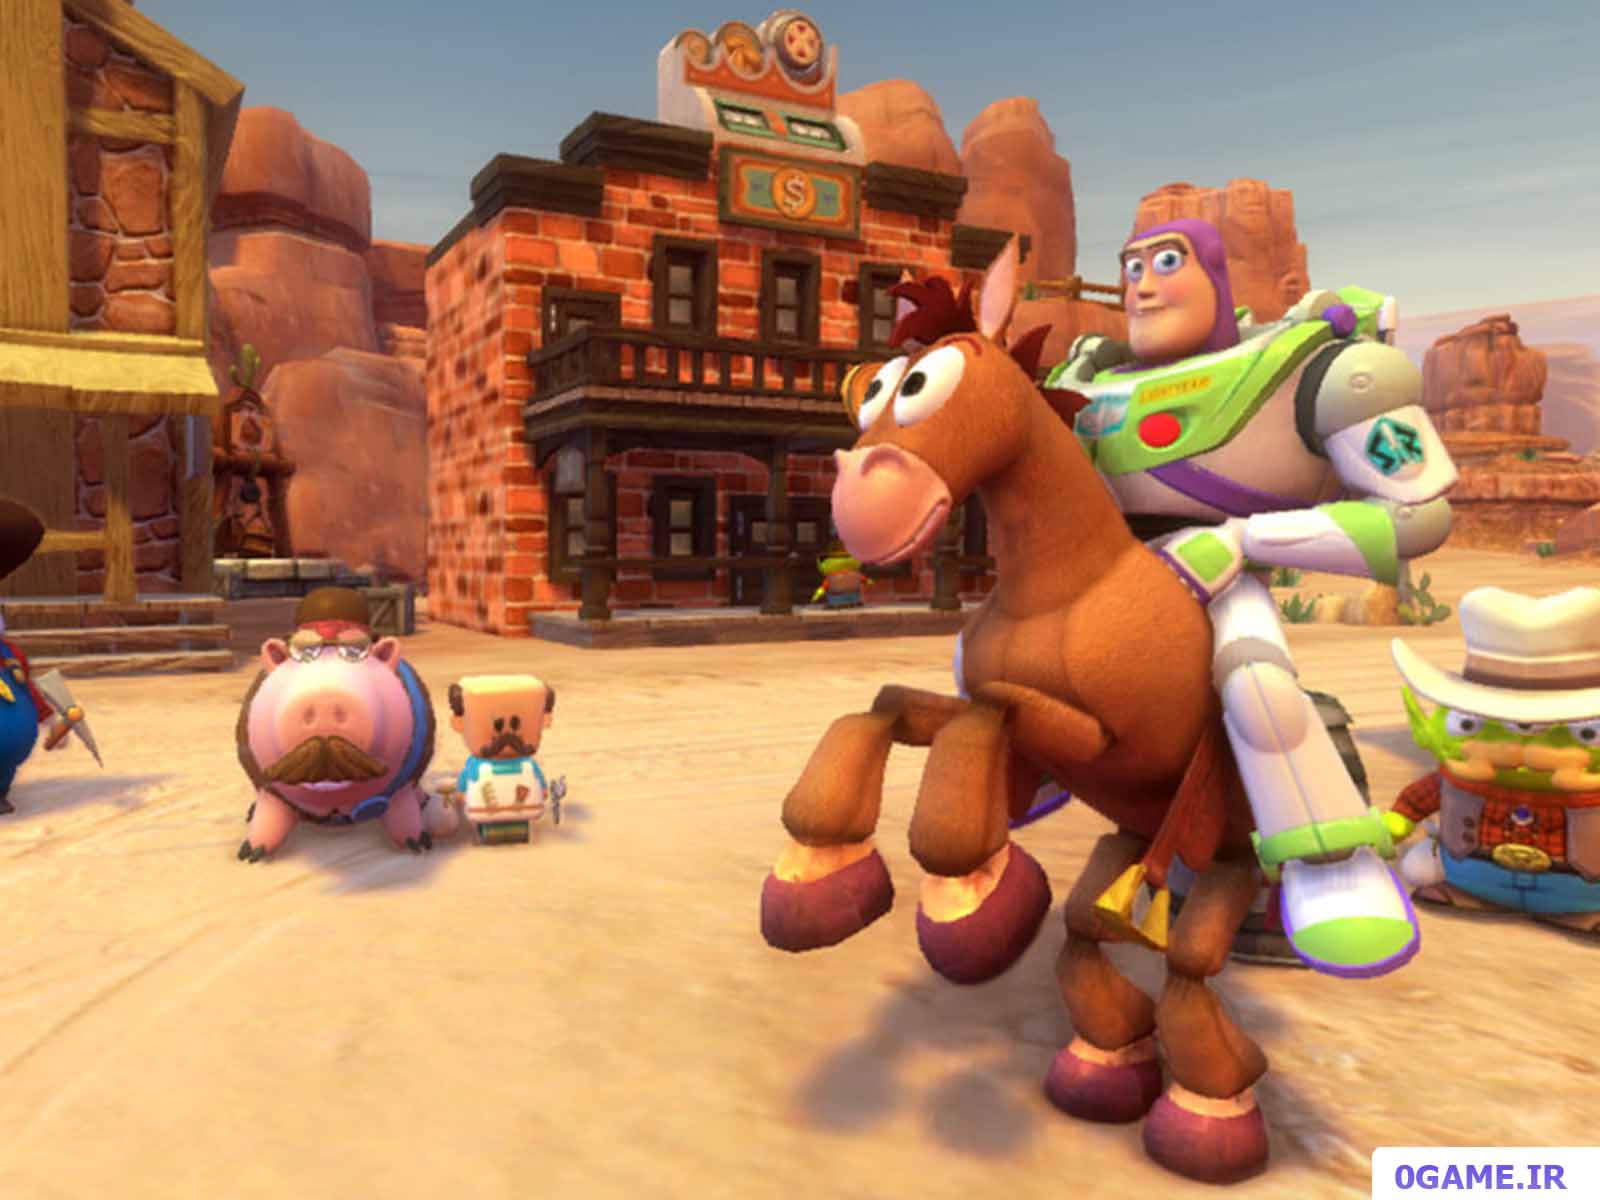 دانلود بازی اسباب بازی 3 (Toy Story 3: The Video Game) نسخه کامل برای کامپیوتر